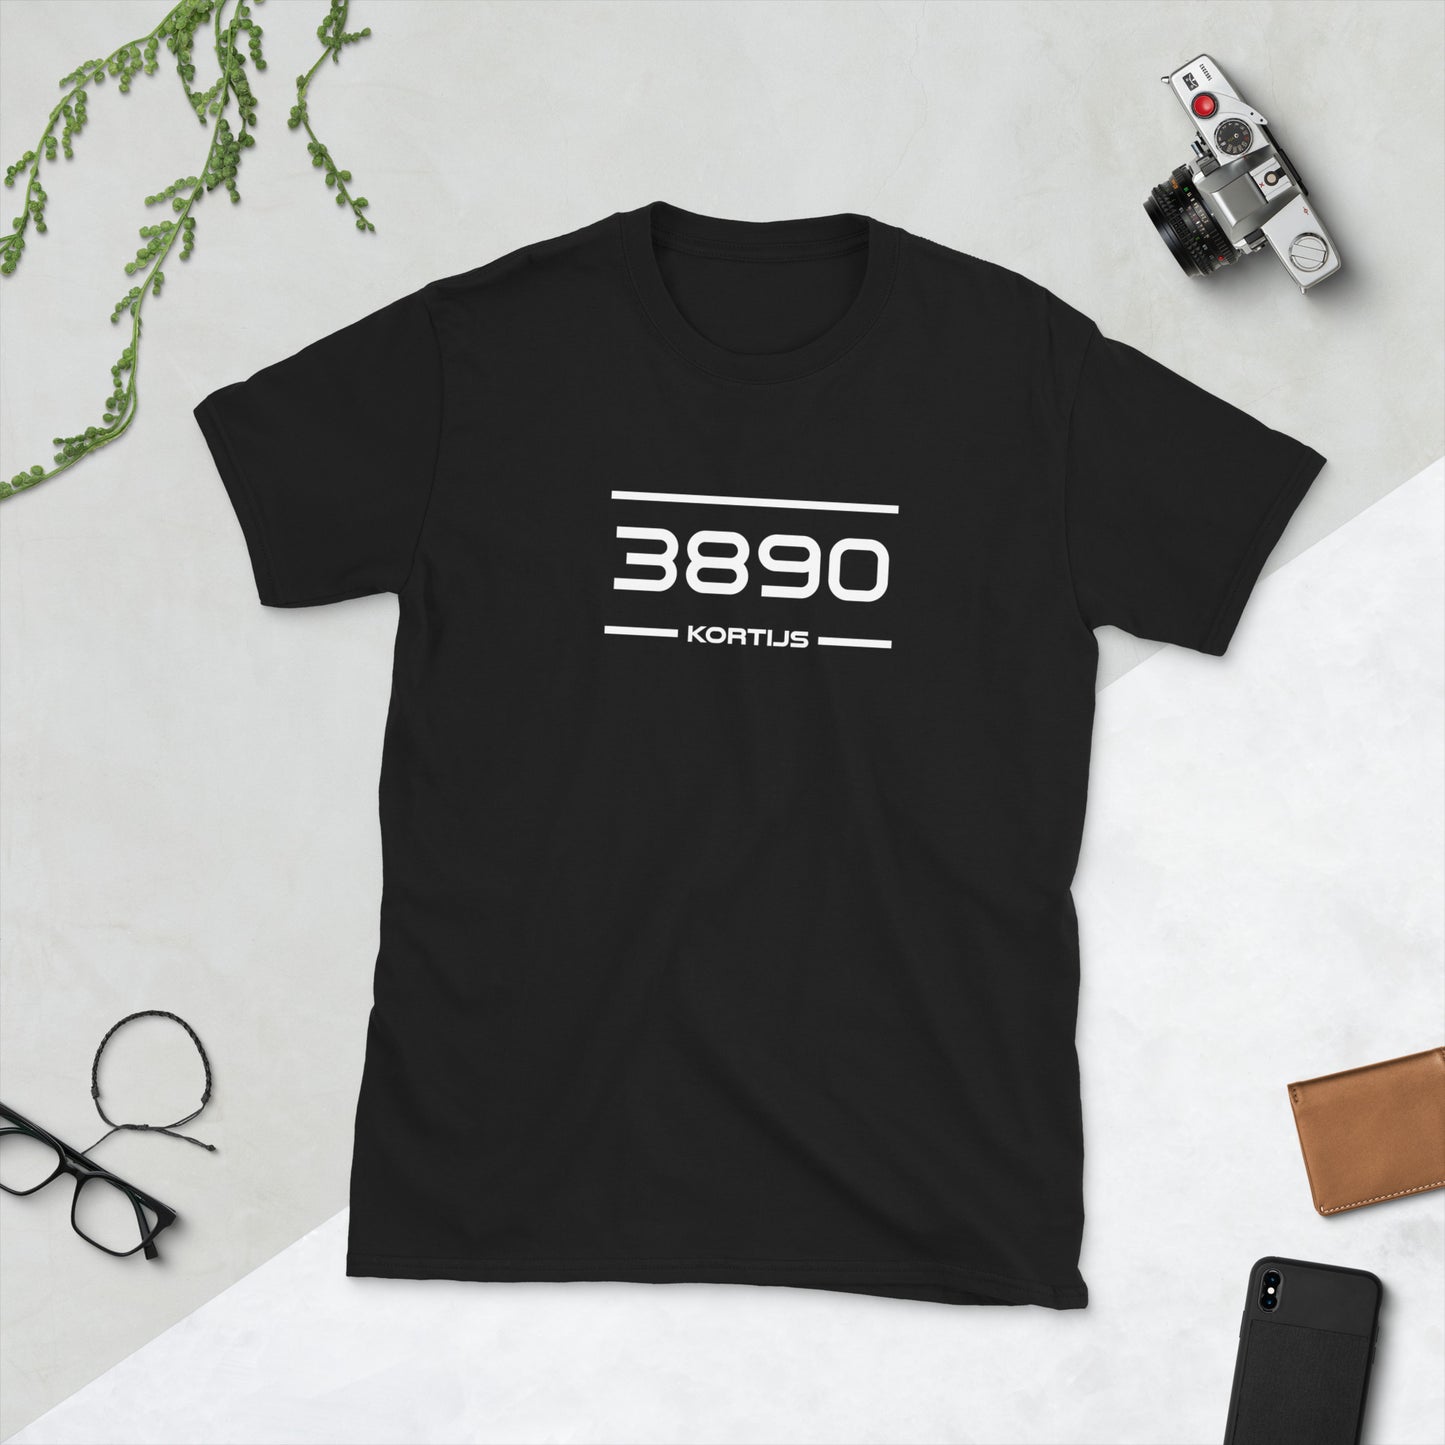 Tshirt - 3890 - Kortijs